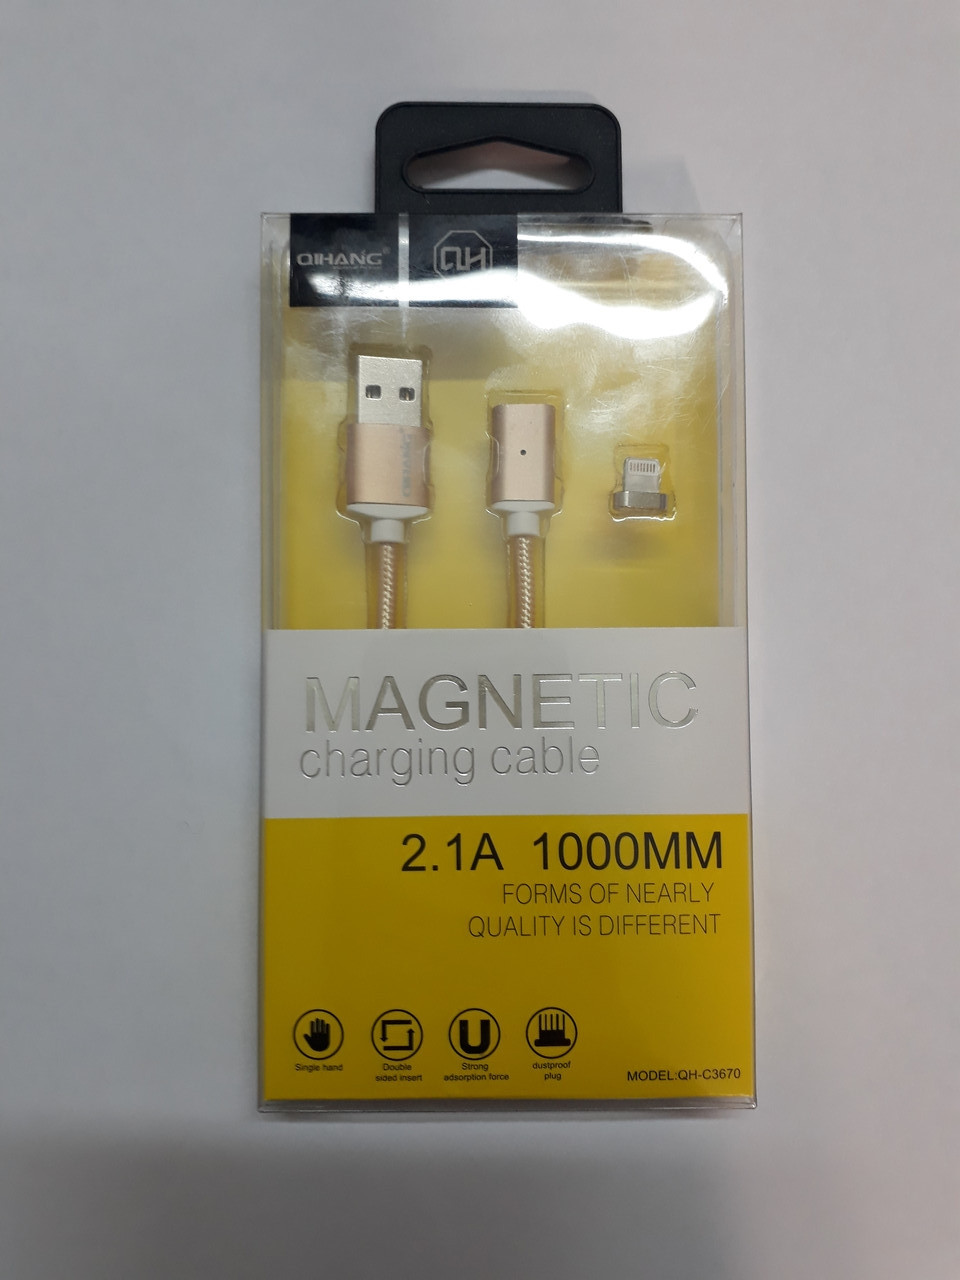 USB Провод на магните для Apple магнитная зарядка (lightning)